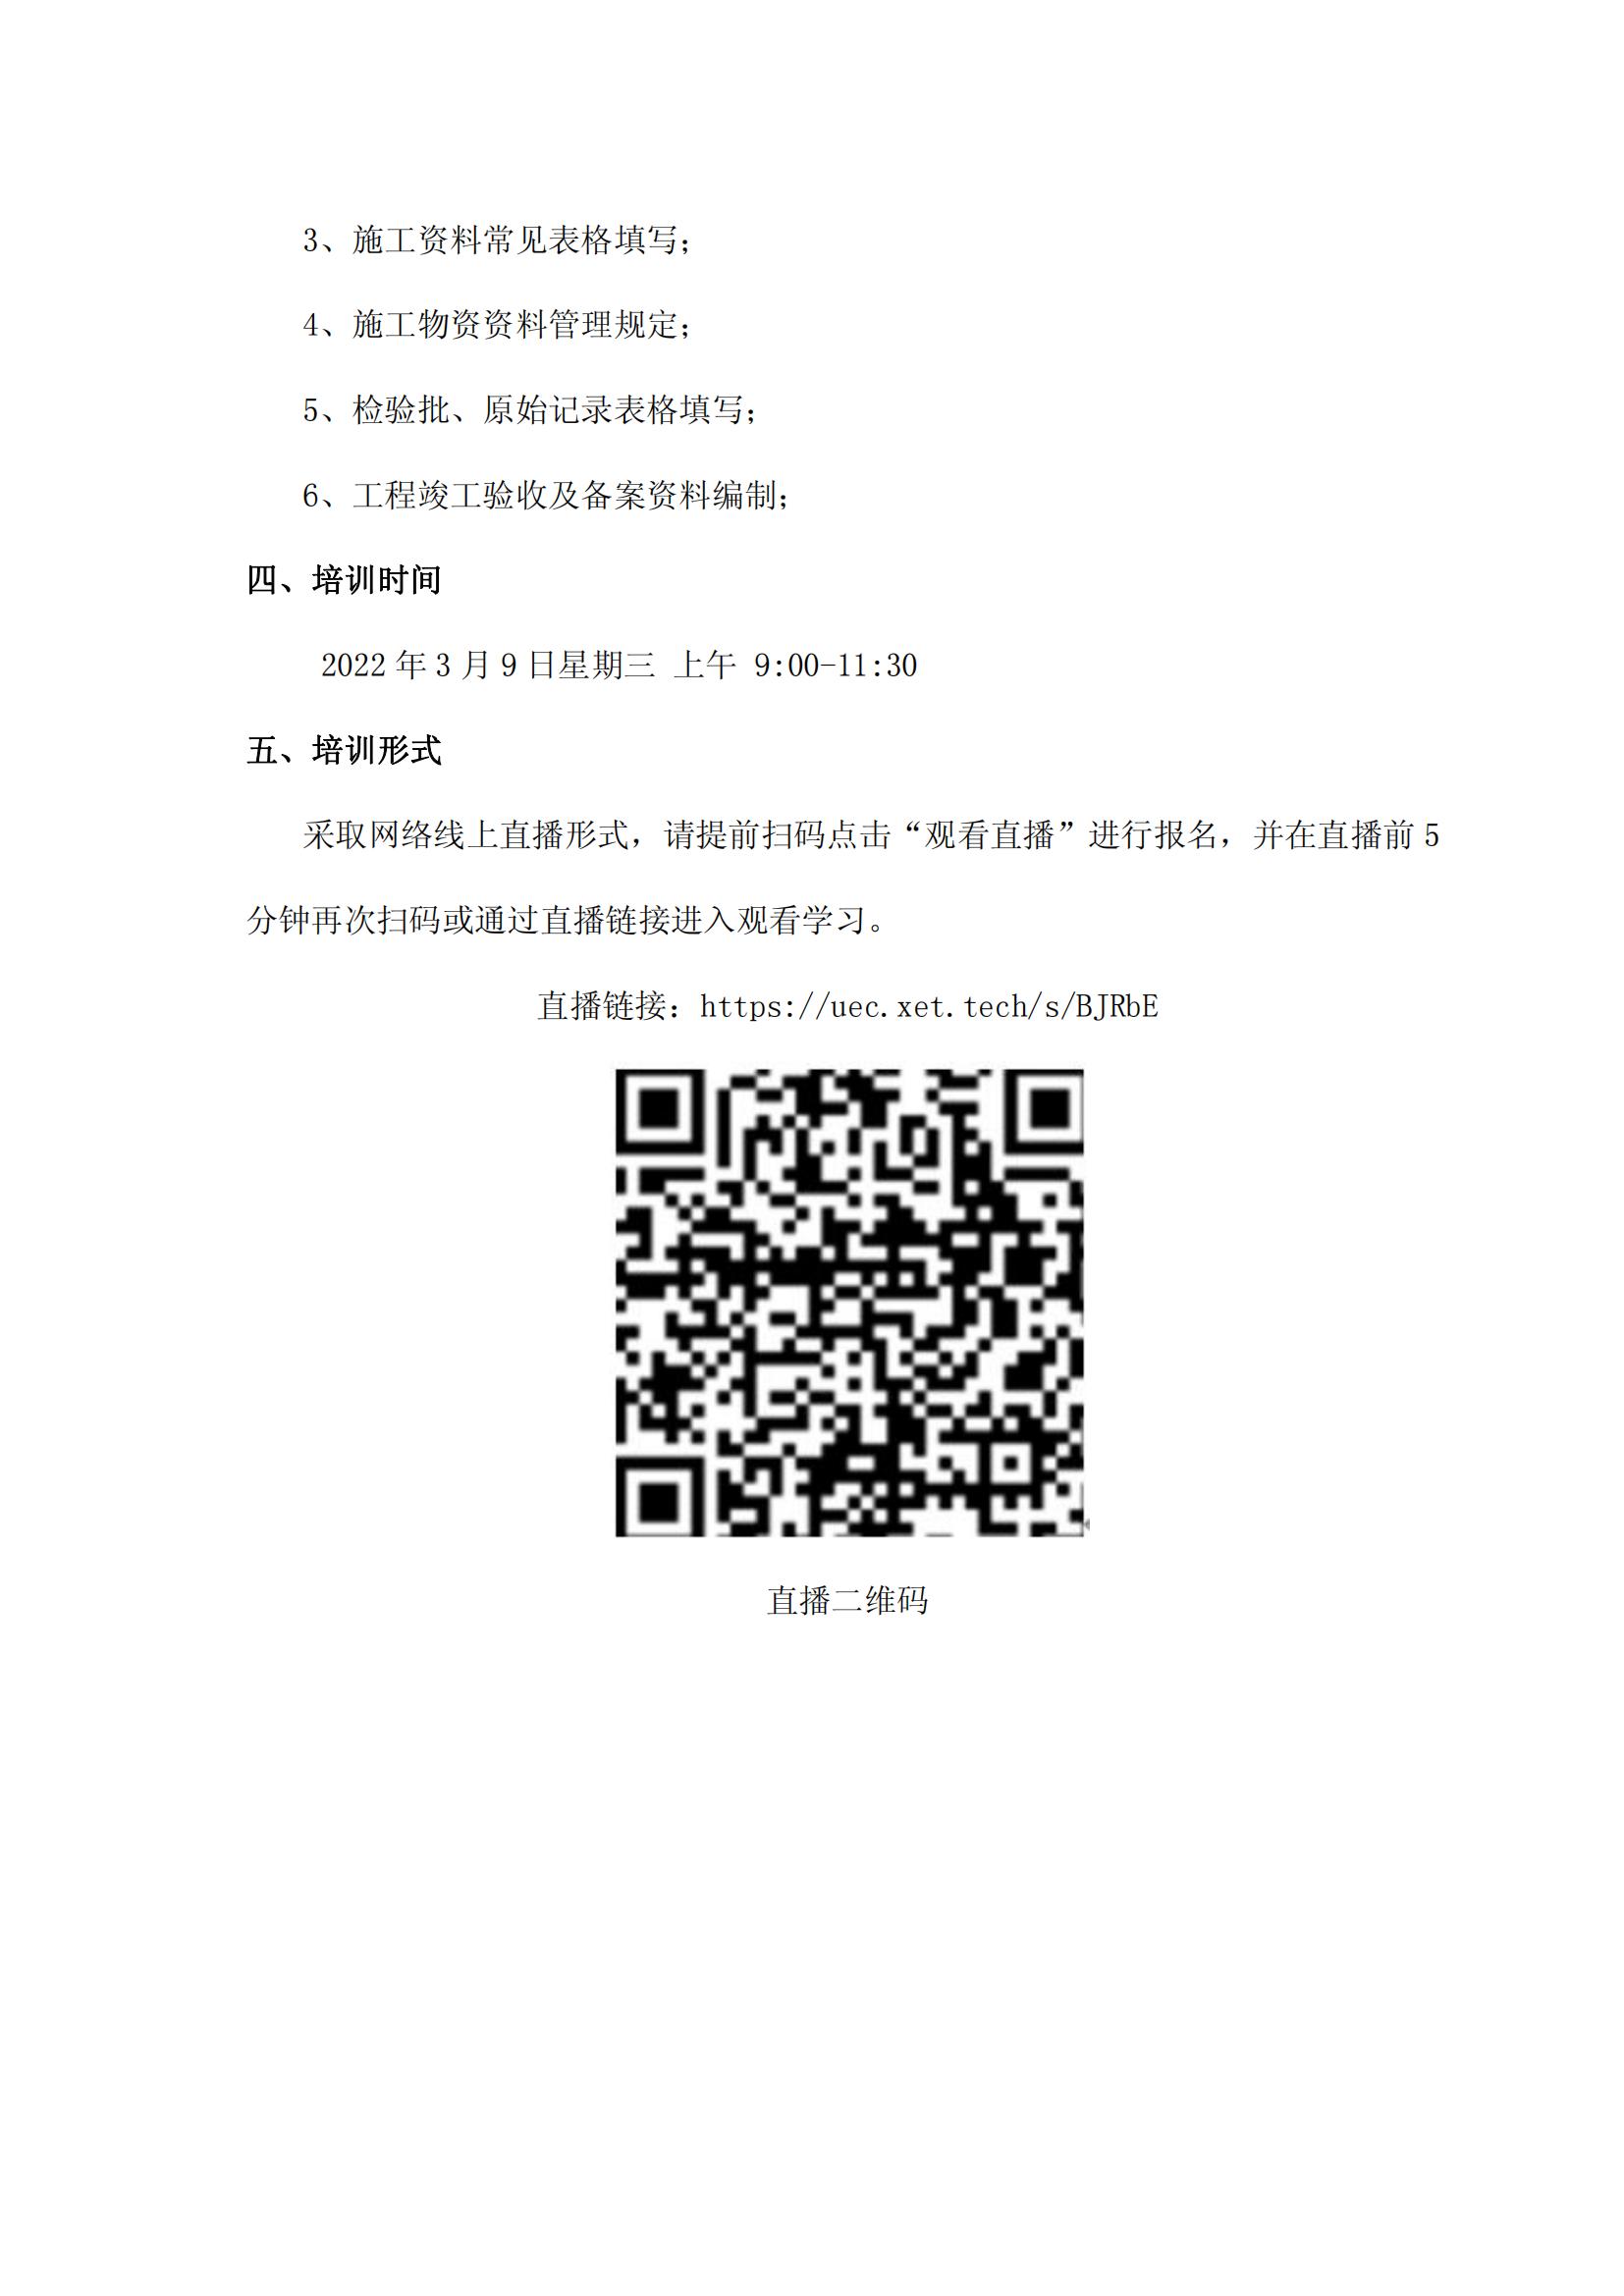 22 关于举办《四川省工程建设统一用表(2020修订版)》培训的通知_01.jpg